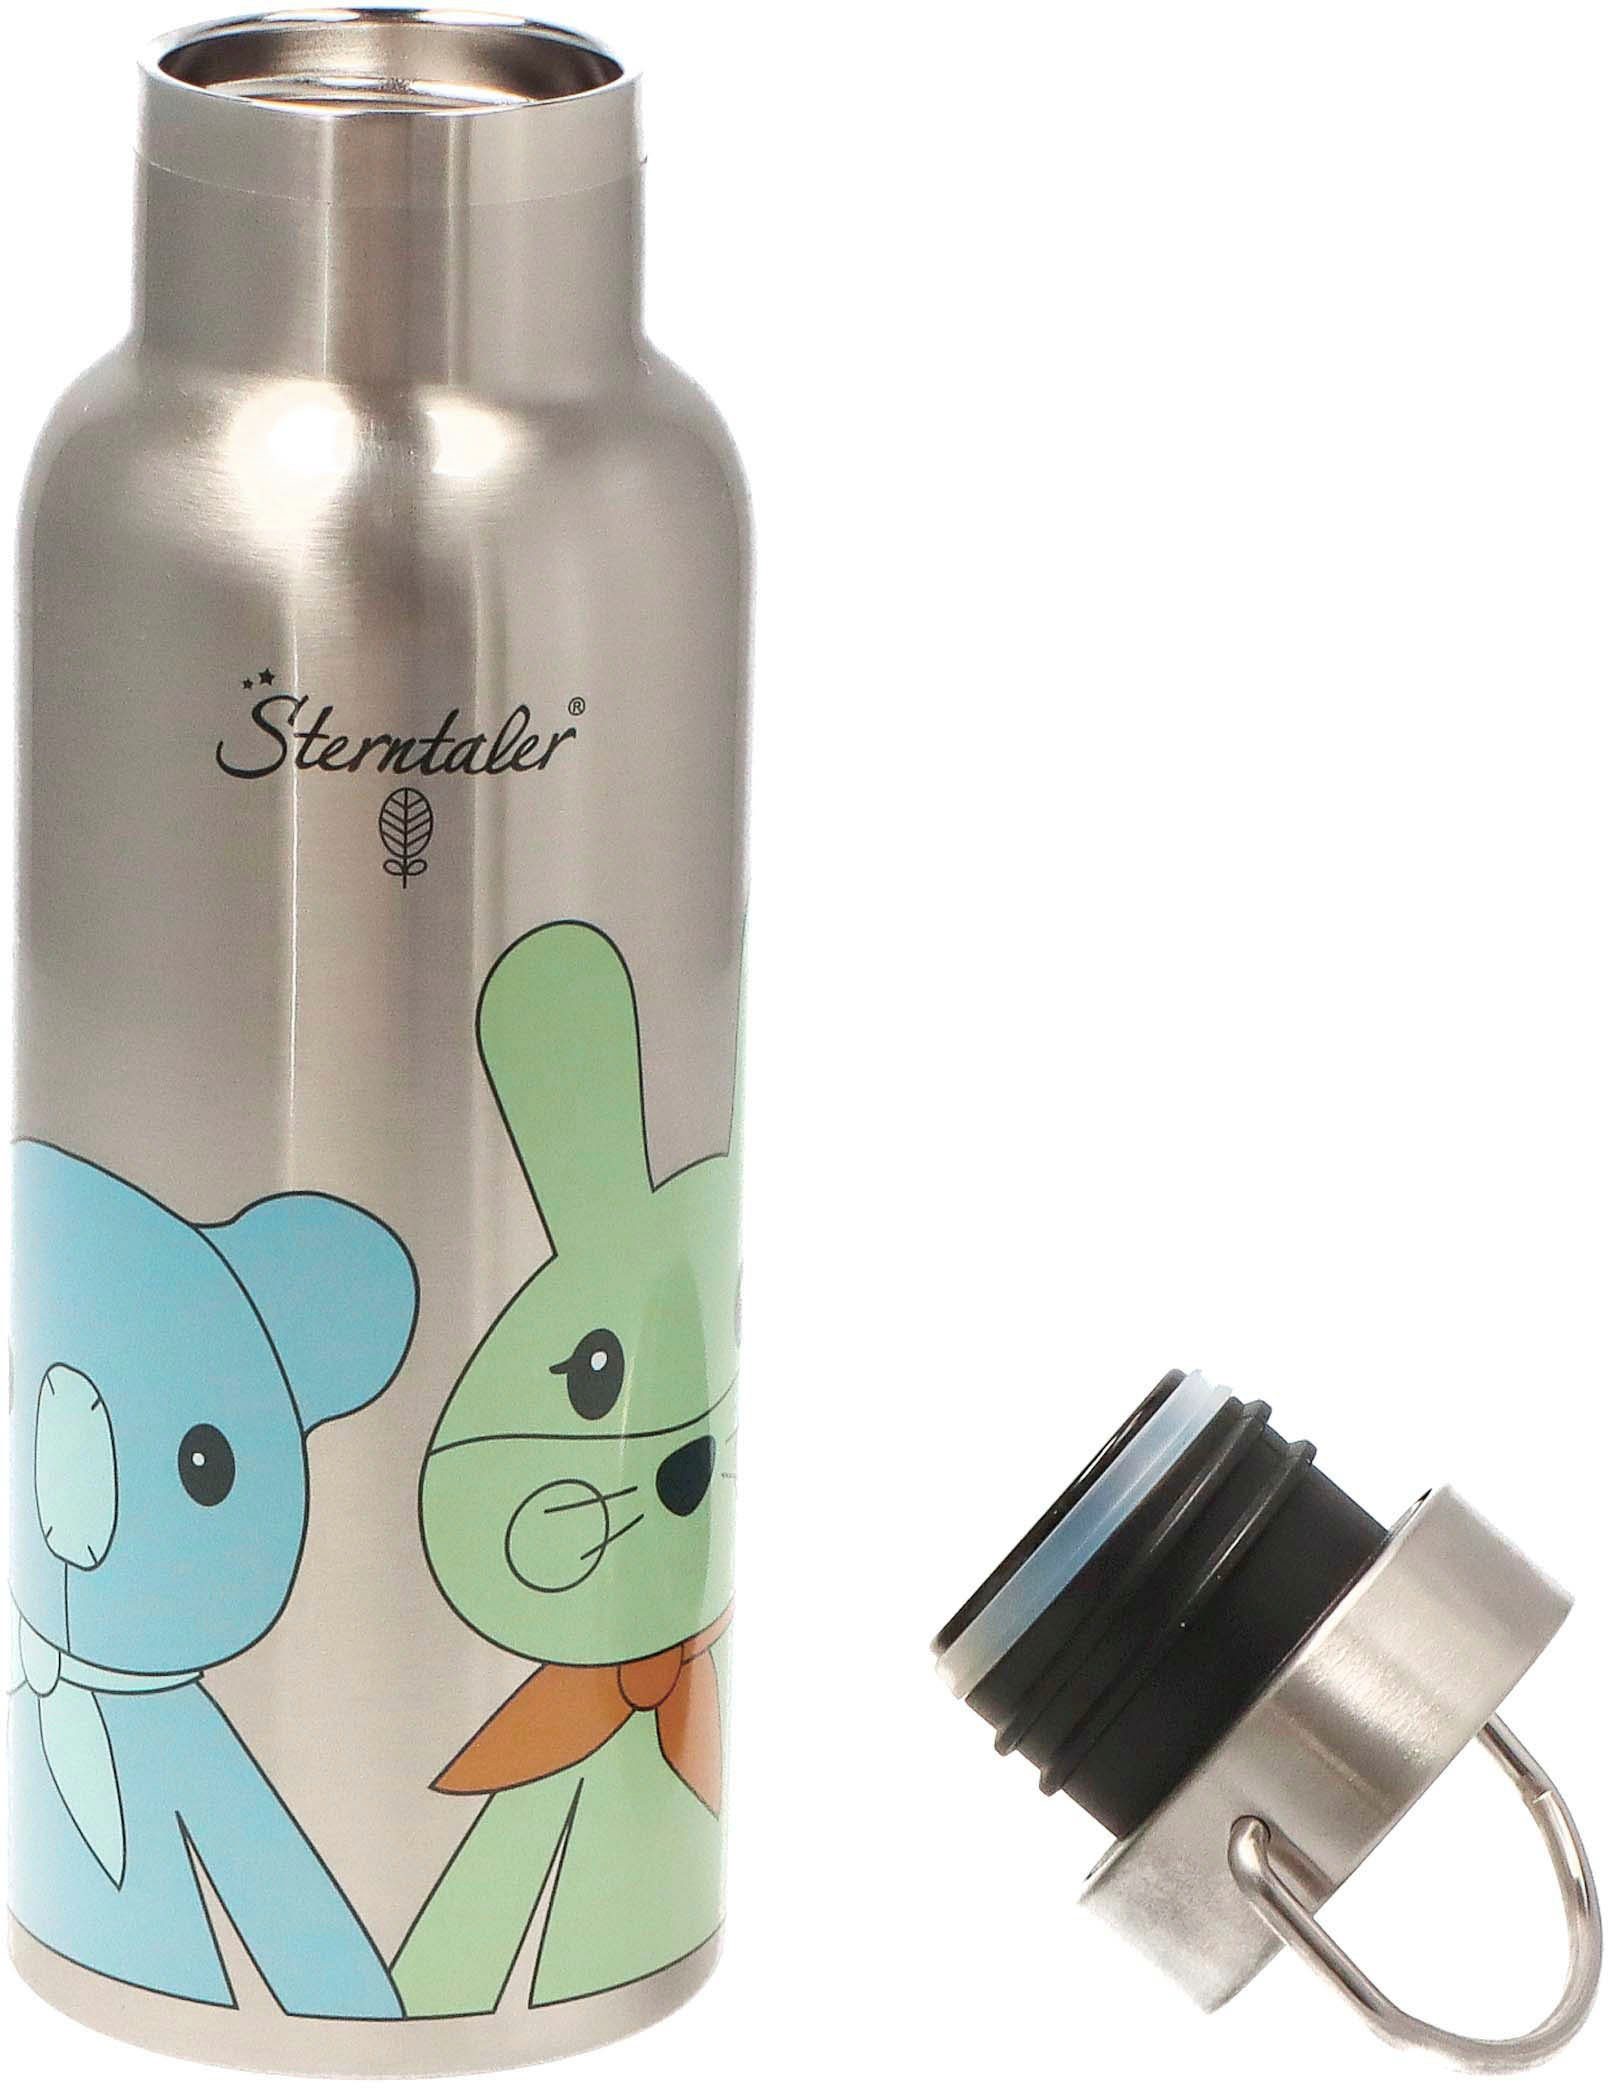 Sterntaler® Trinkflasche Stay true to Kinni+Kalla, nature, Kinder für